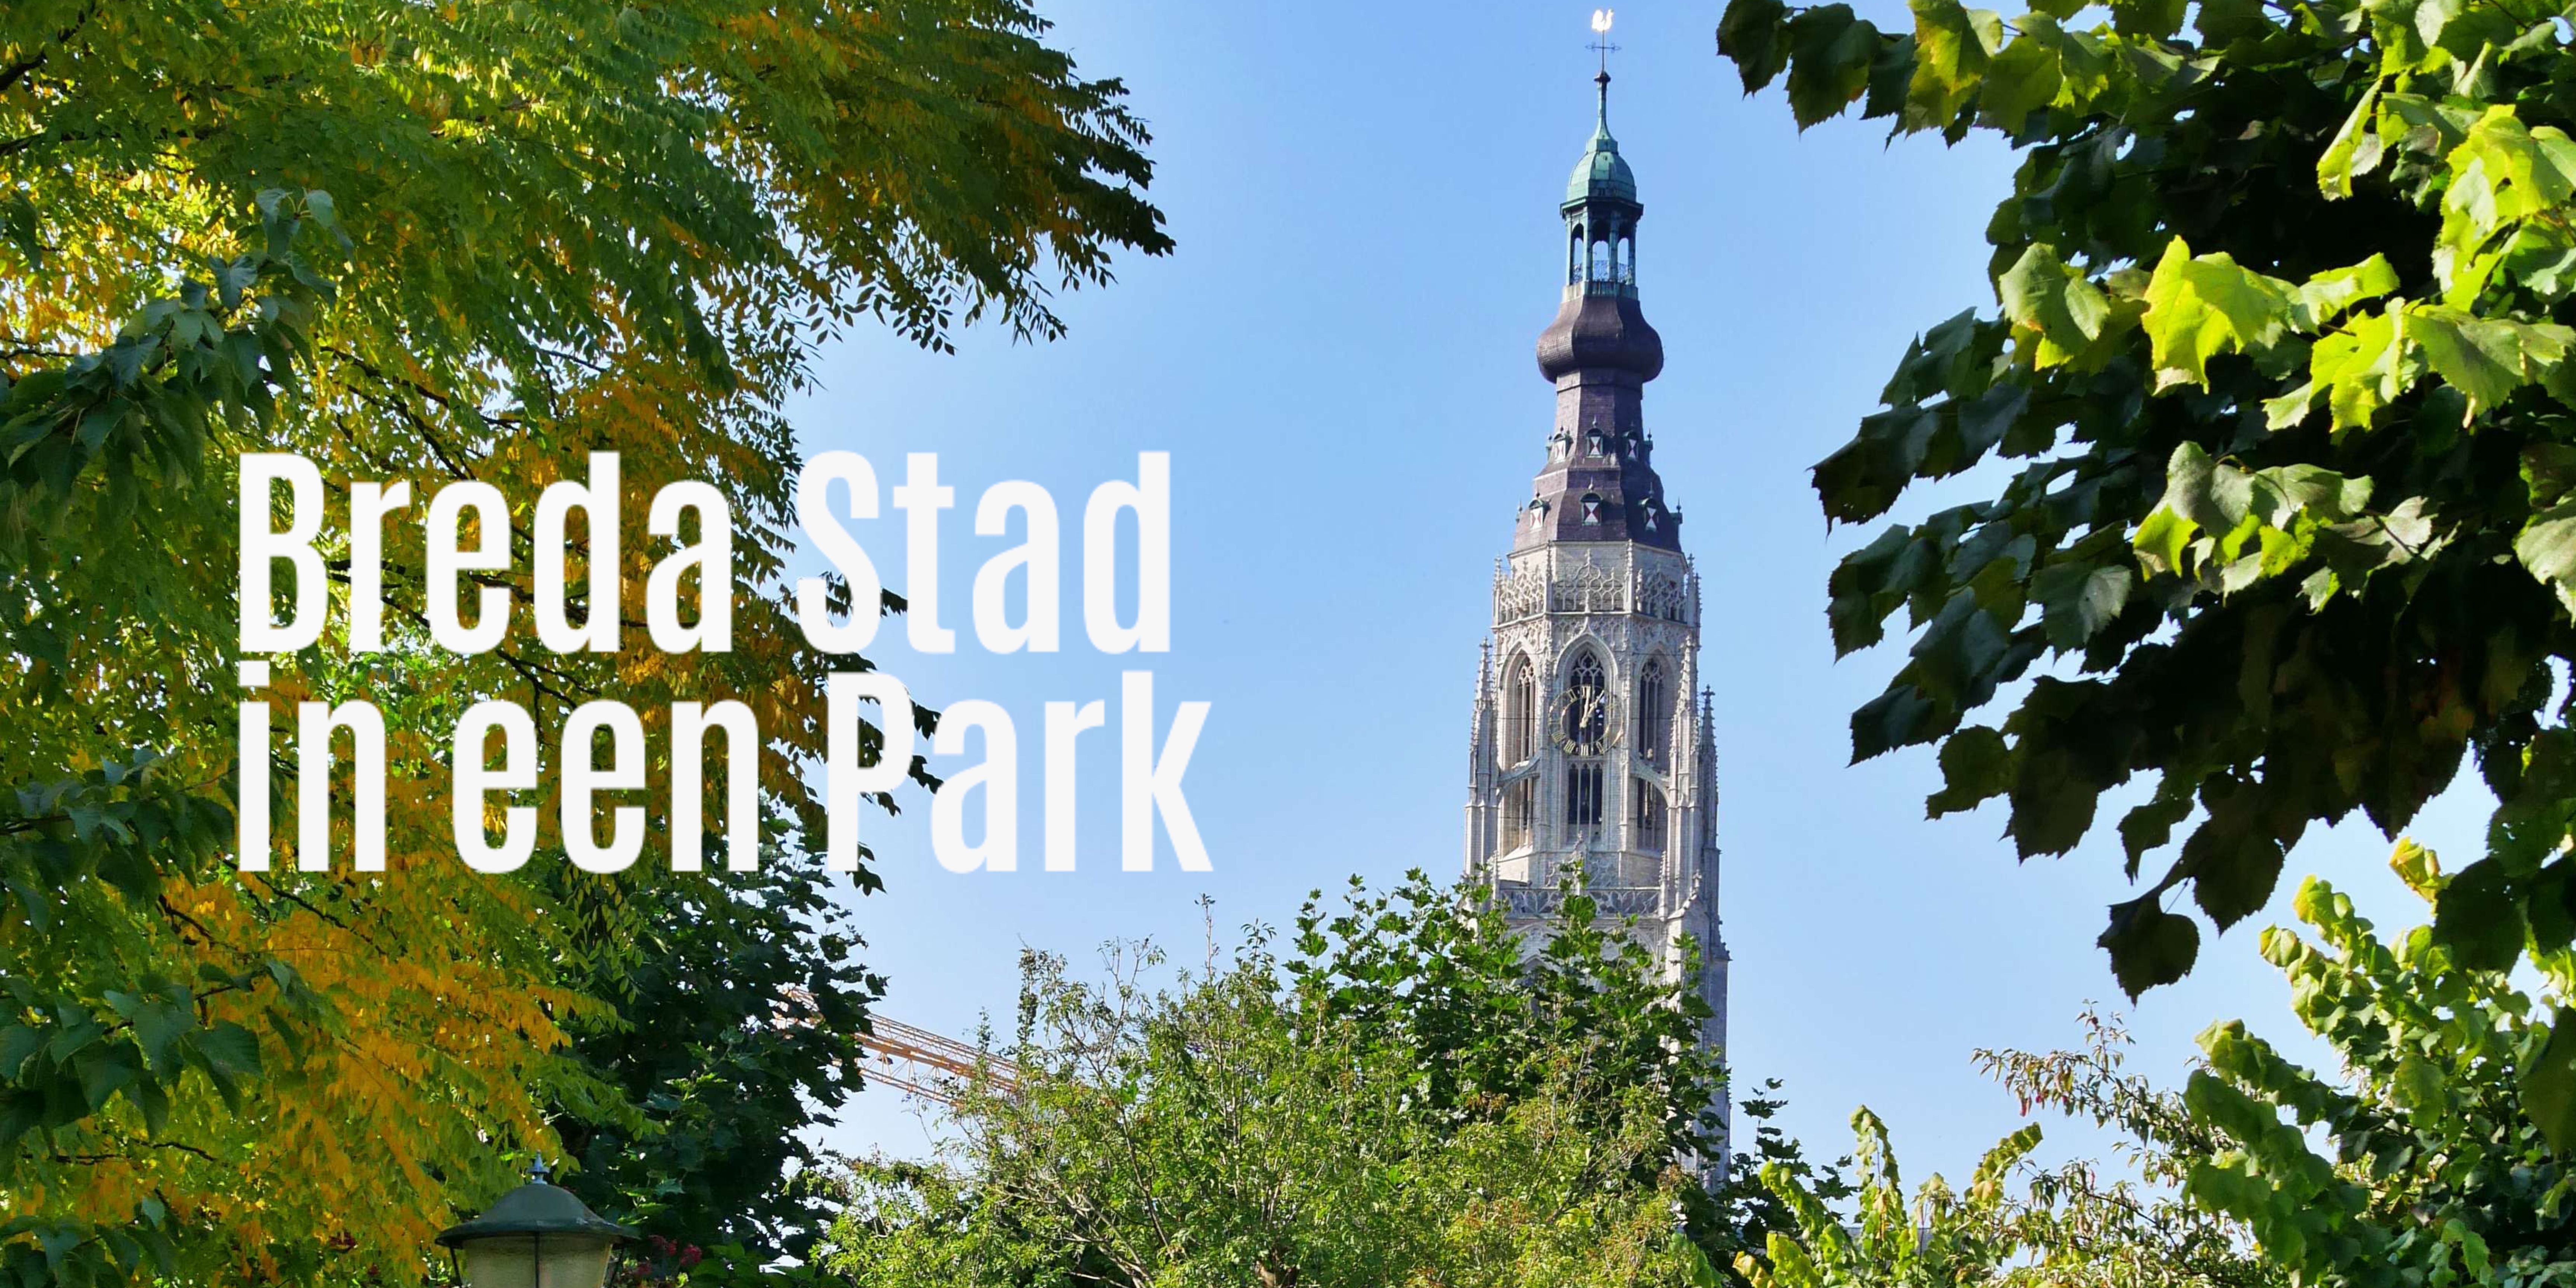 Breda Stad in een Park